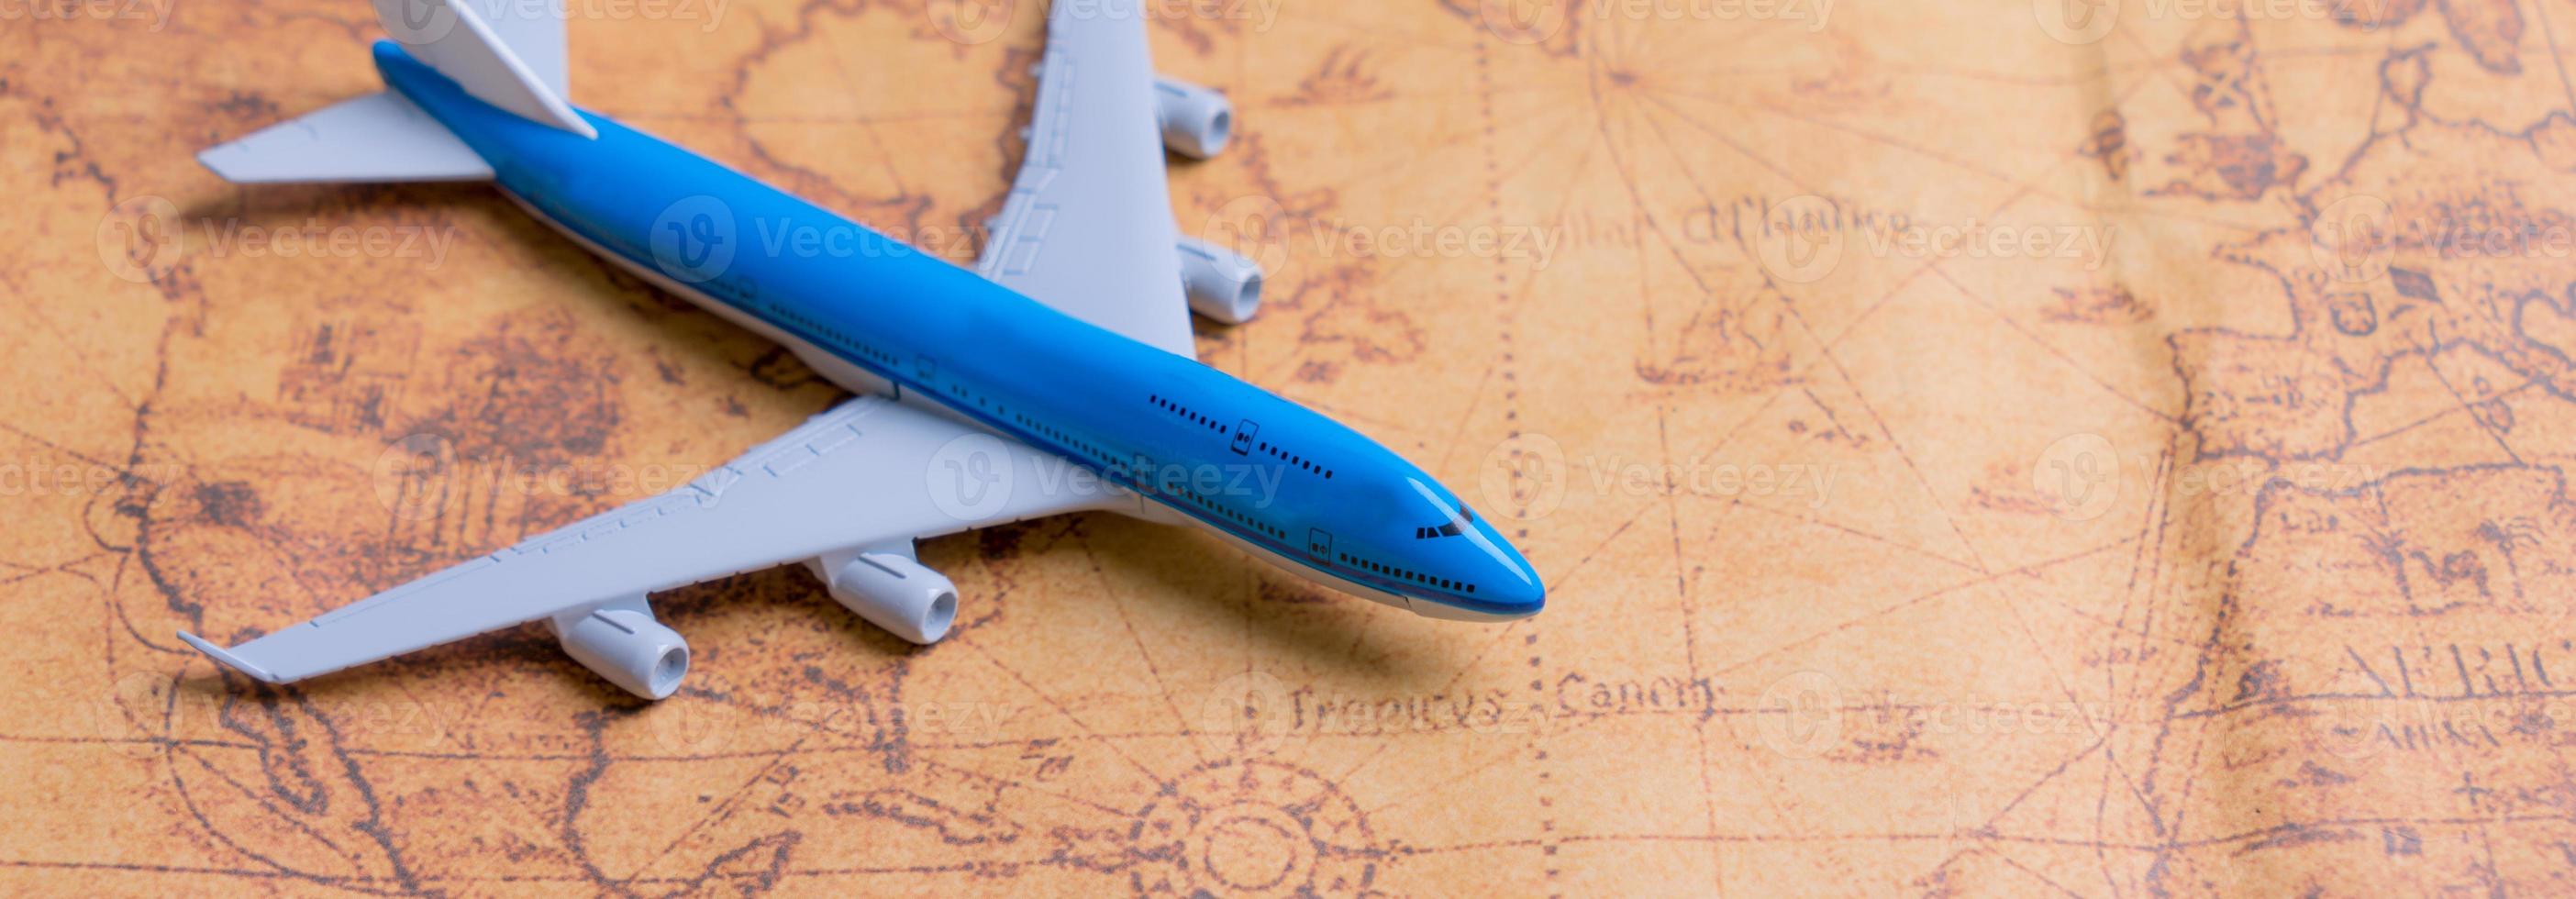 avión pequeño en el mapa para planificar un viaje de vacaciones y accesorios para viajar foto